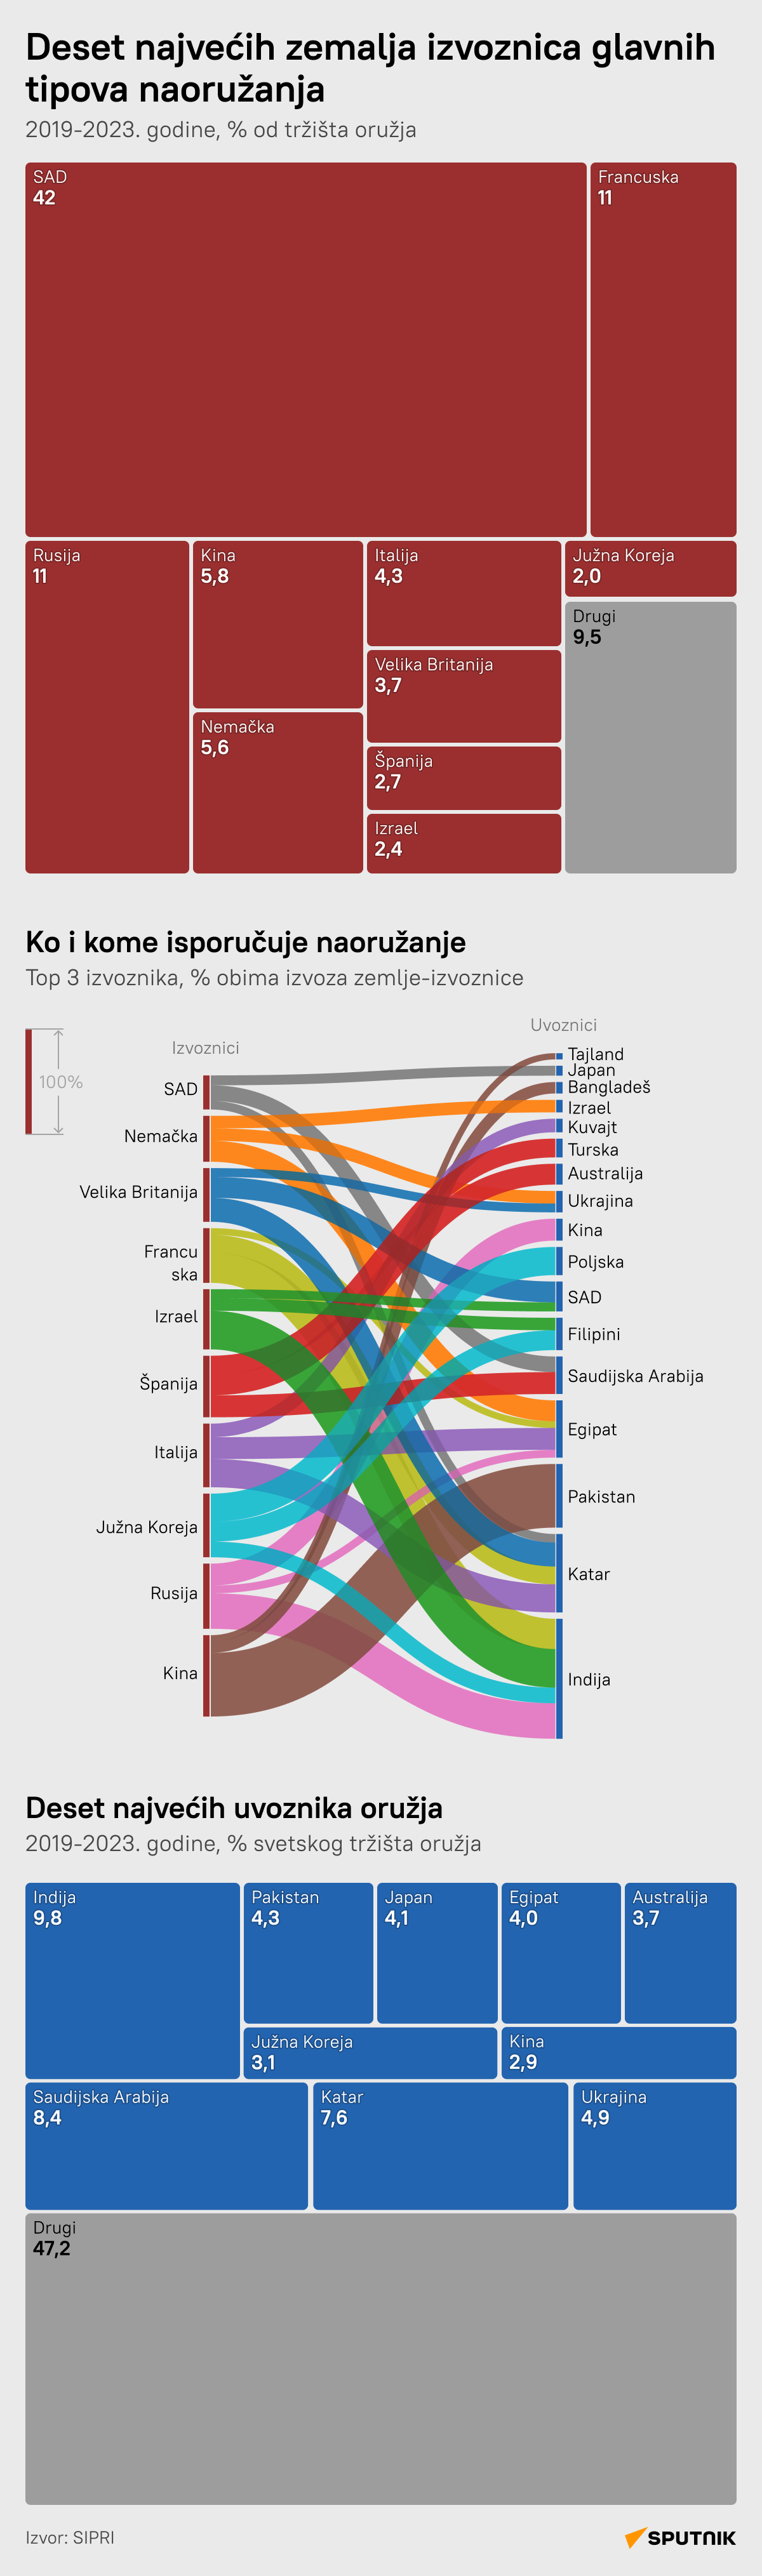 Najveći izvoznici oružja na svetu - Sputnik Srbija